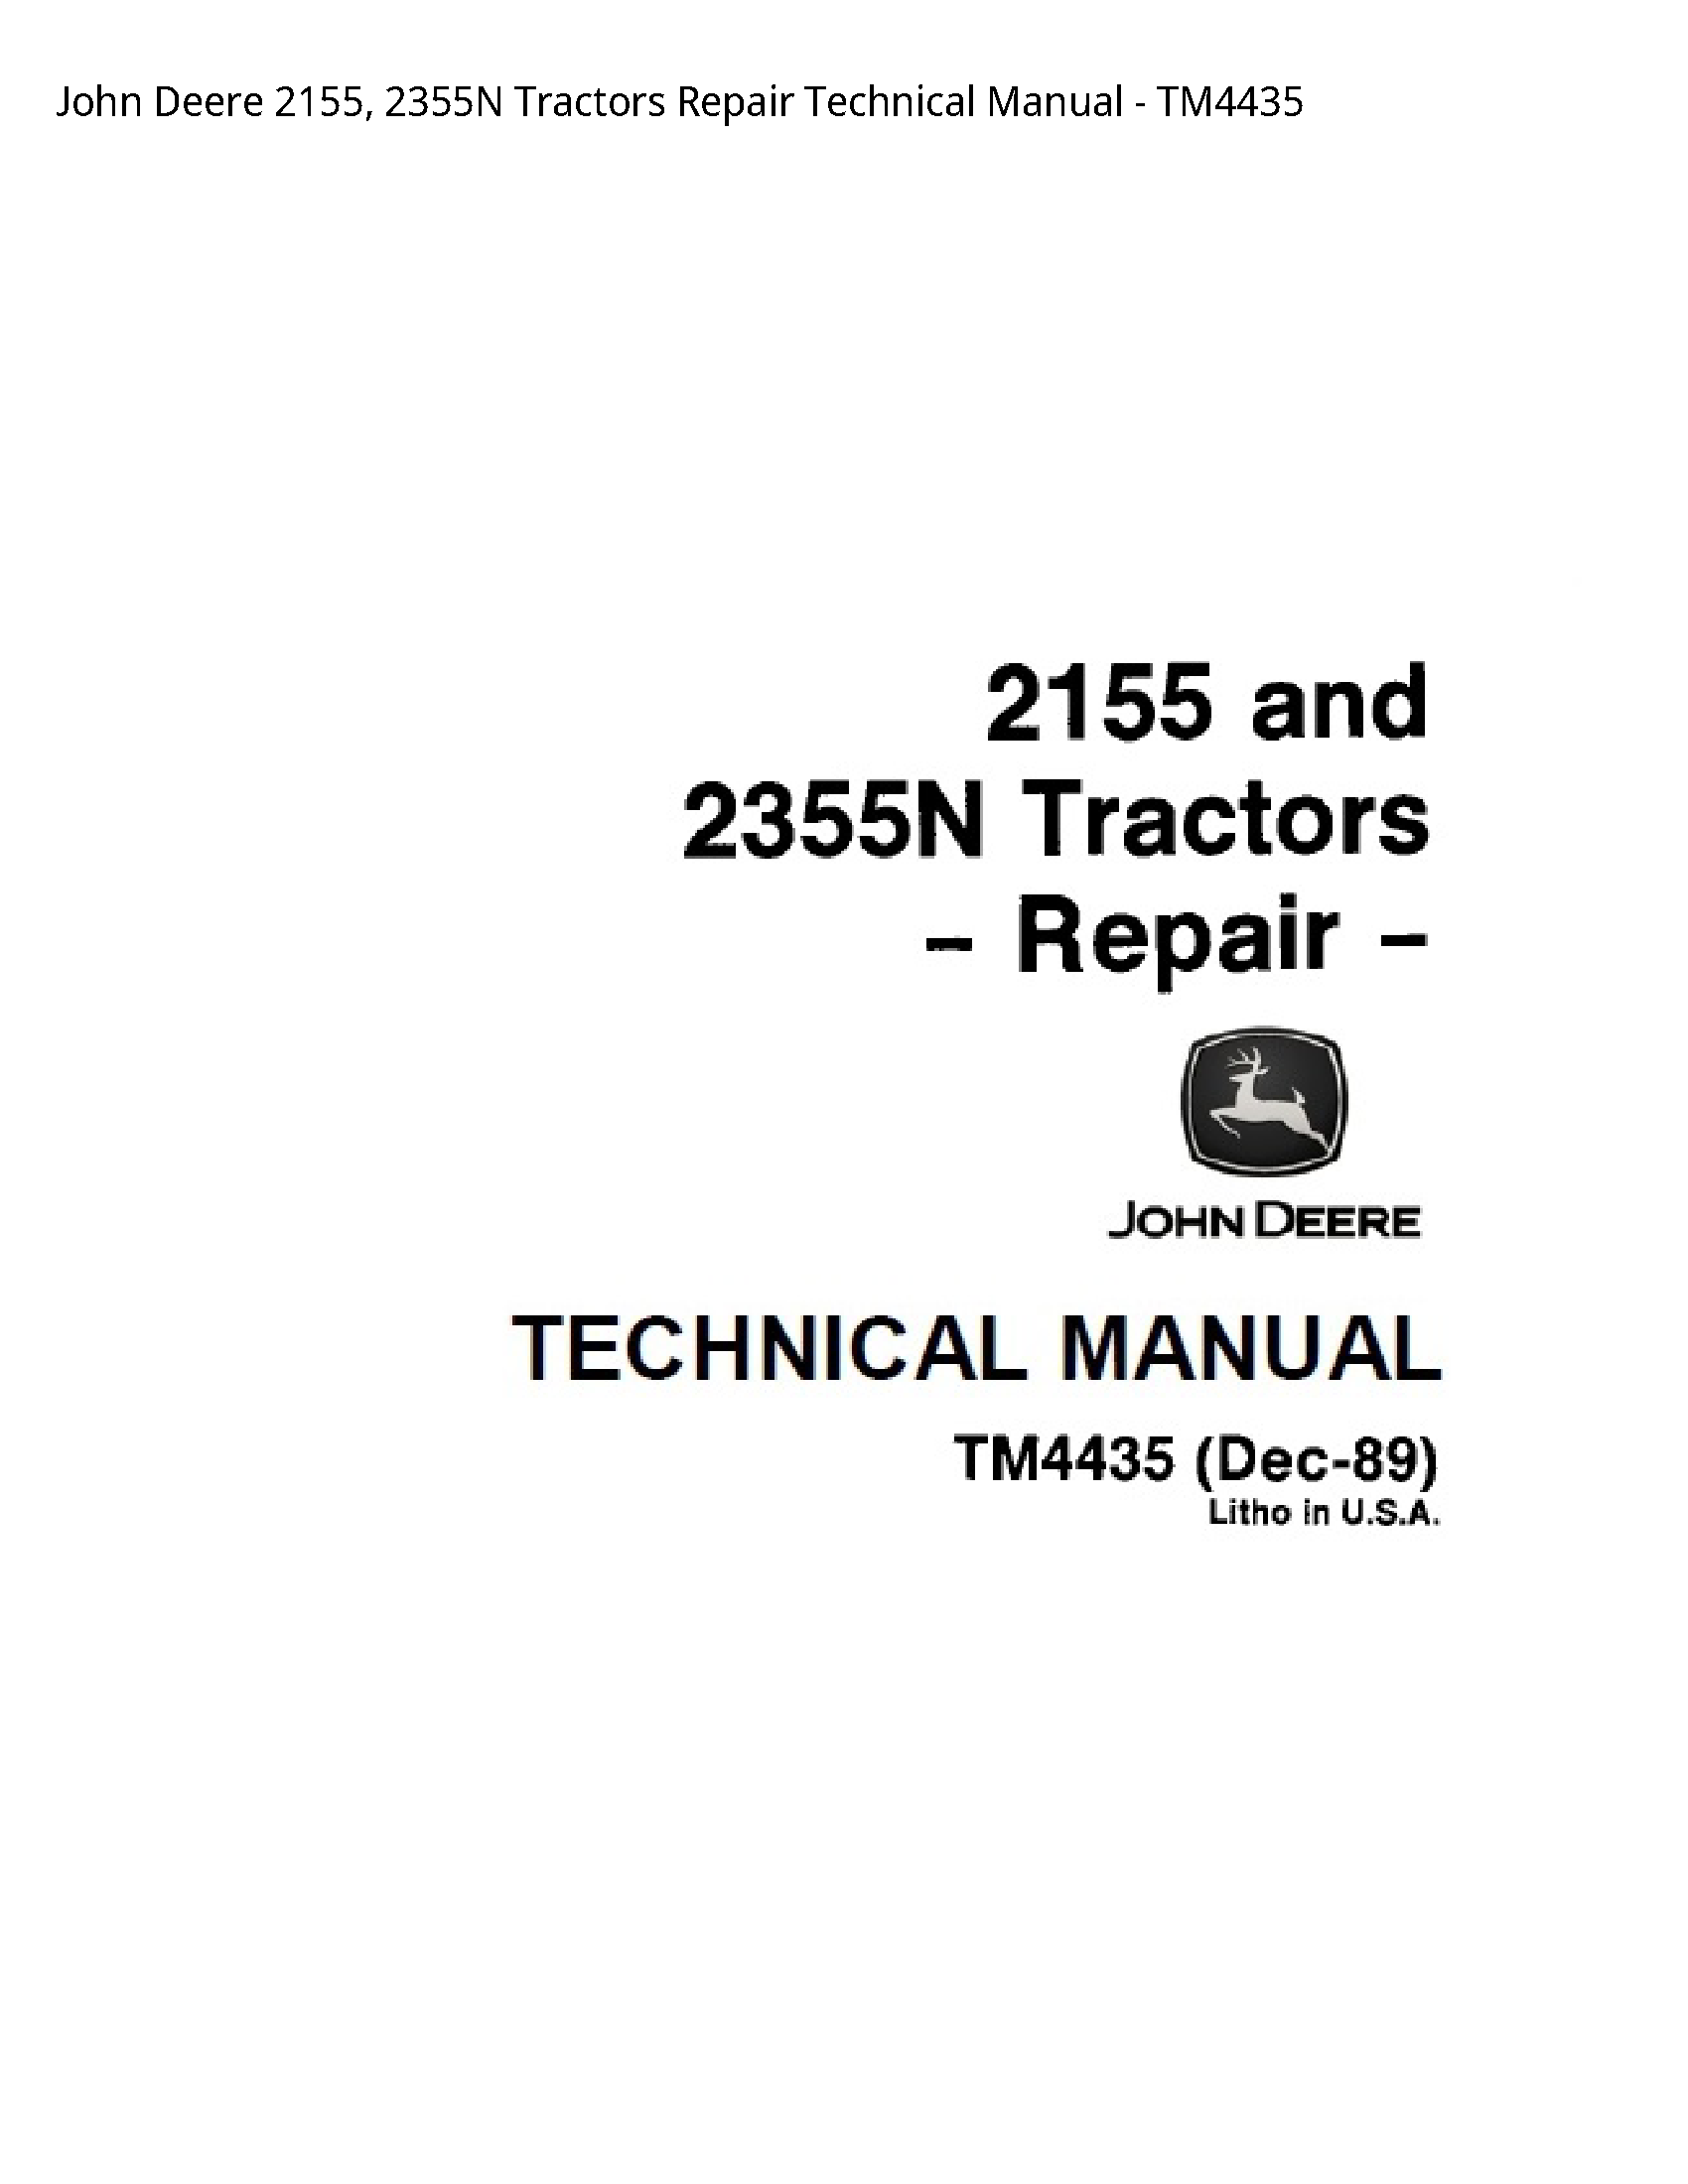 John Deere 2155 Tractors Repair Technical manual